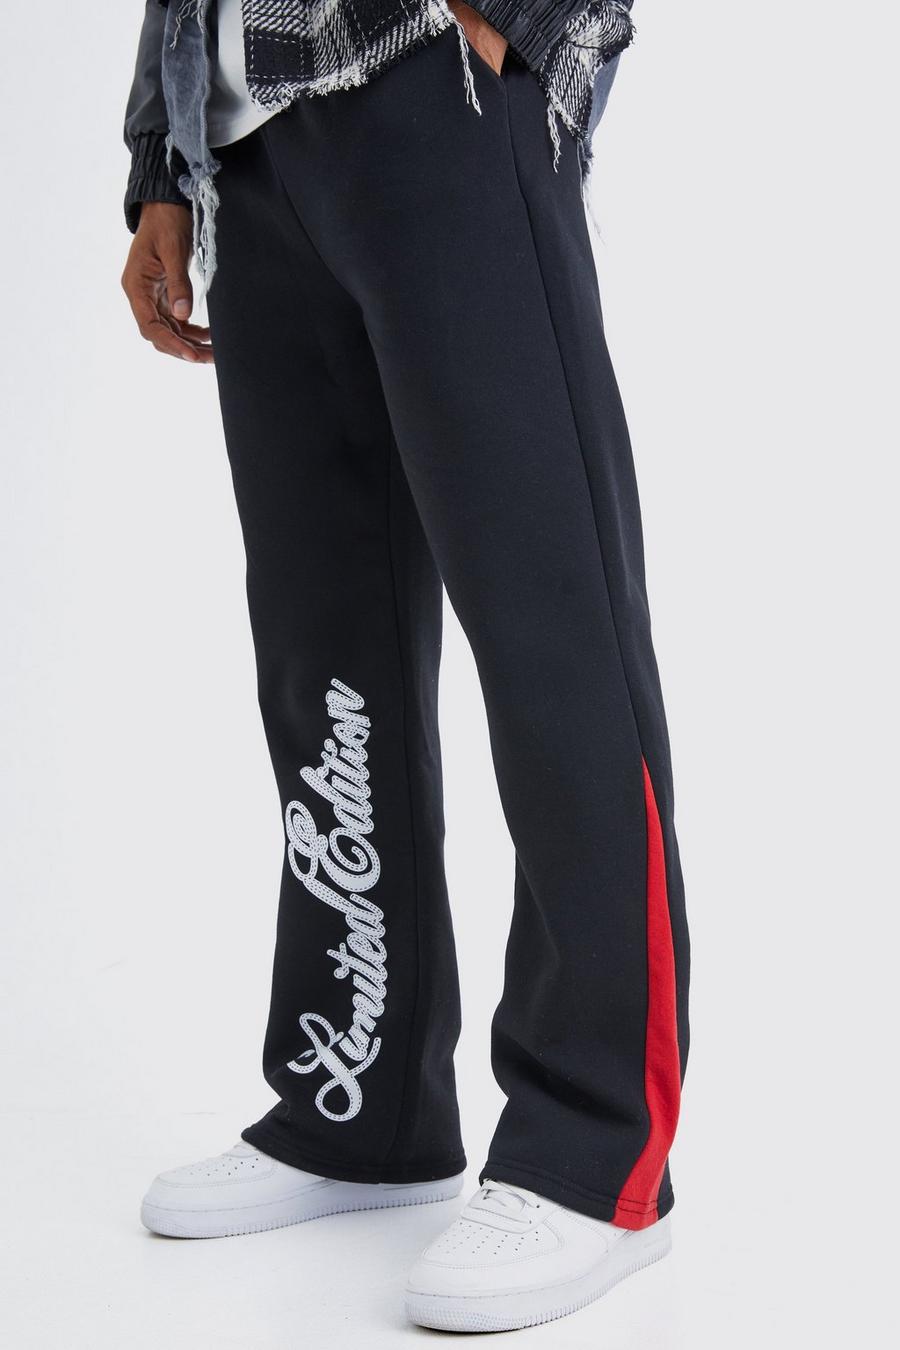 Pantaloni tuta Limited Edition con inserti e scritta, Black